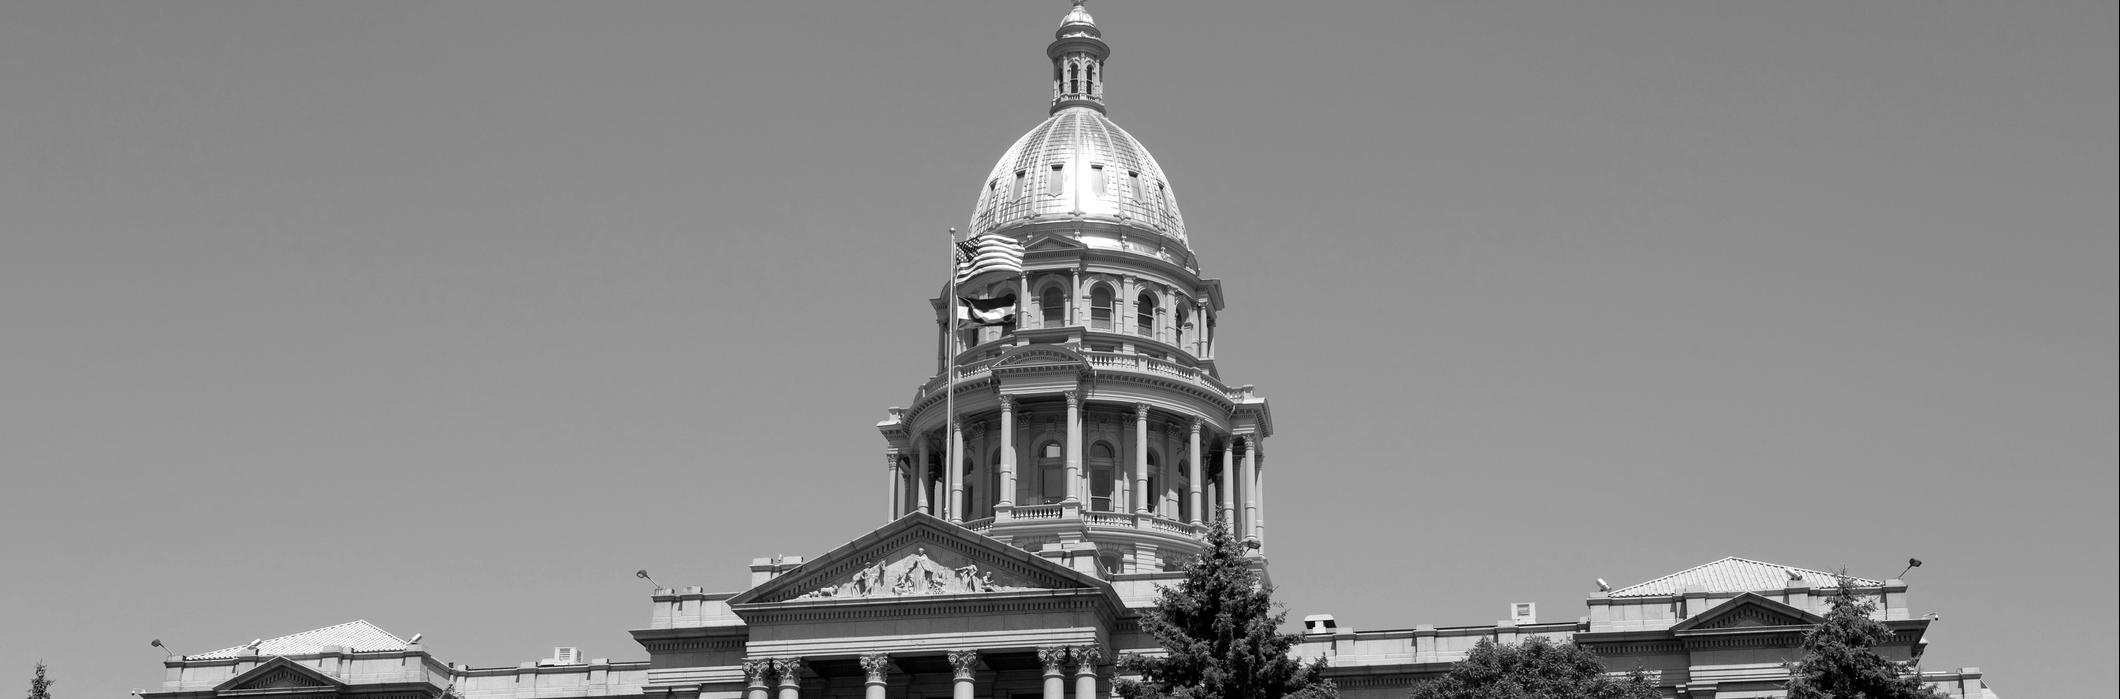 Image of Colorado capitol building